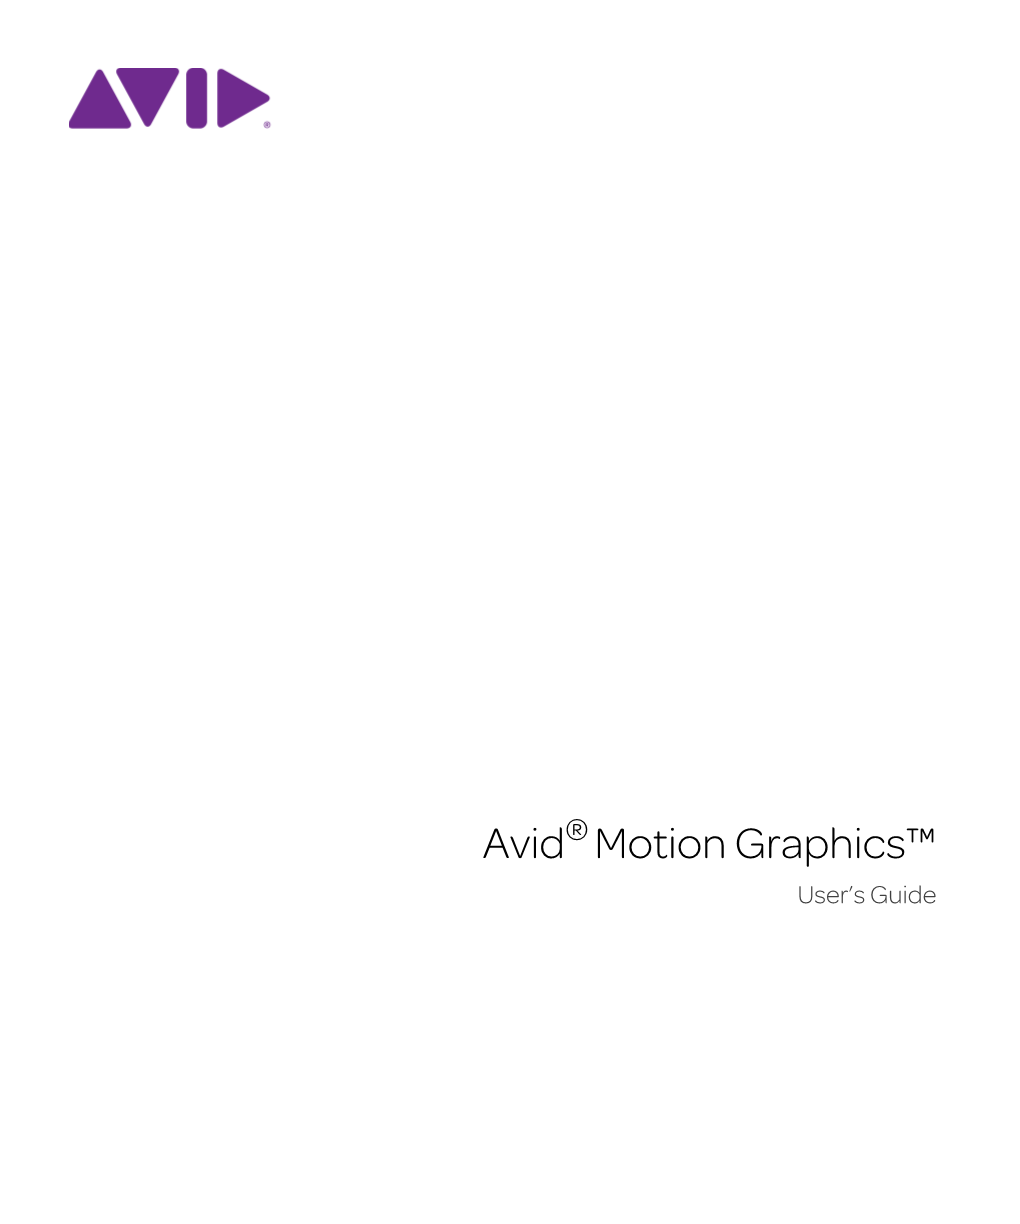 Avid Motion Graphics™